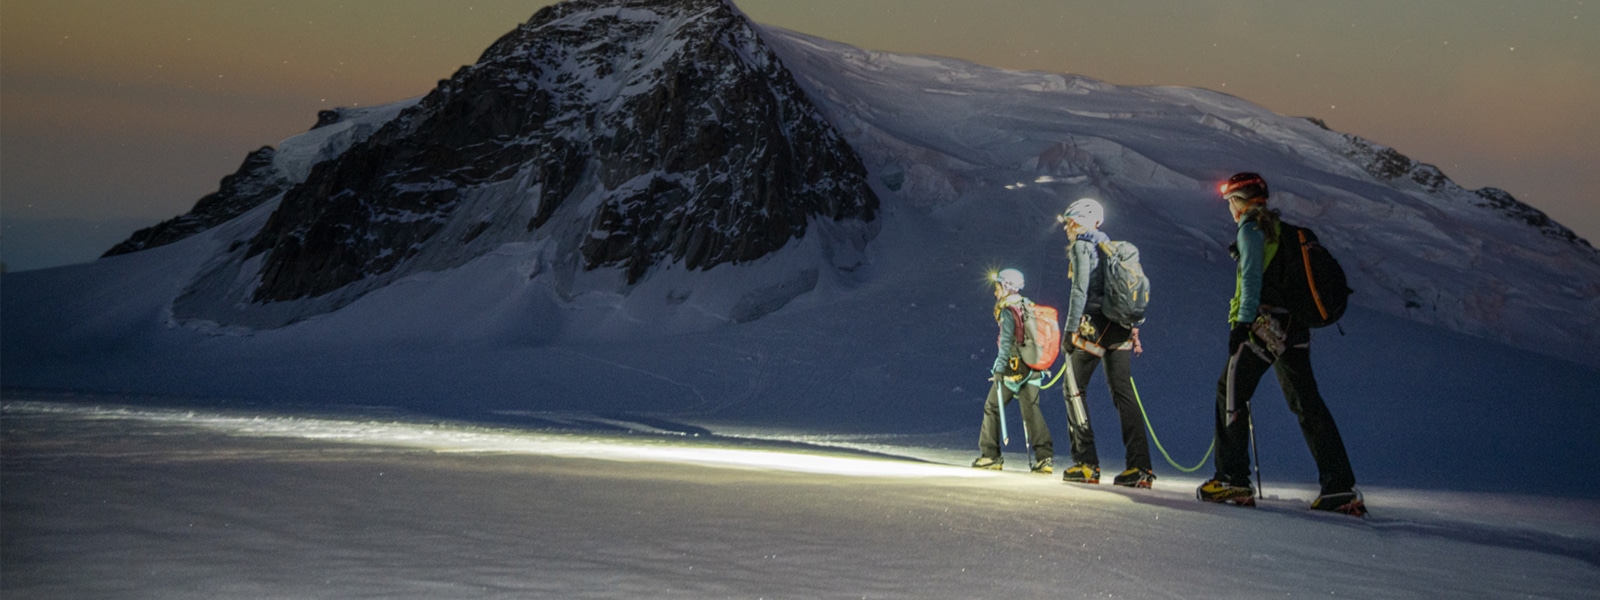 Ba người đi bộ băng qua một ngọn núi tuyết dưới bầu trời đầy sao